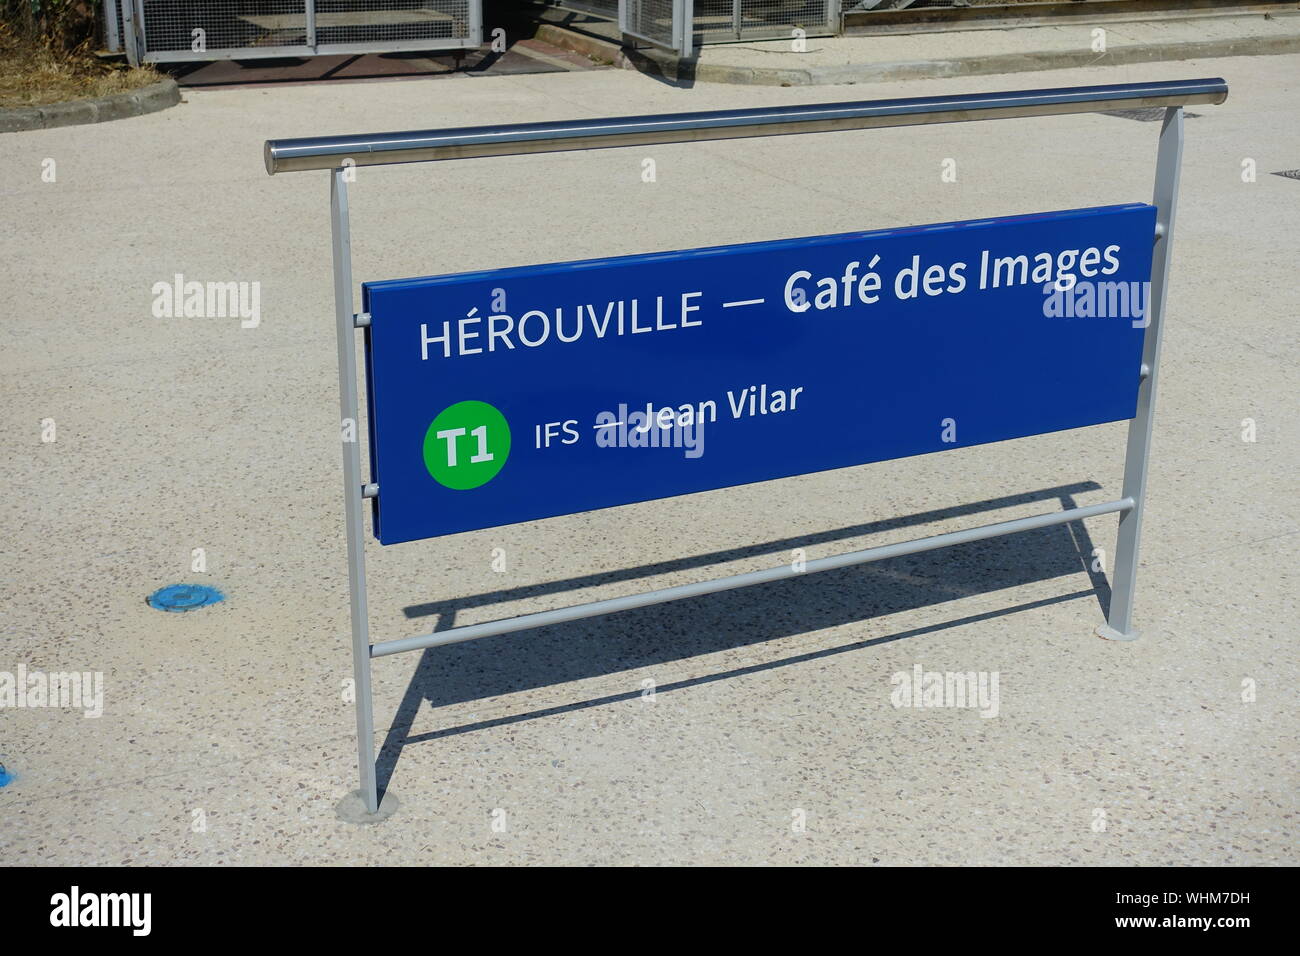 Caen, Straßenbahnhaltestelle Cafe des Images - Caen, Tram Stop Cafe des Images Stock Photo